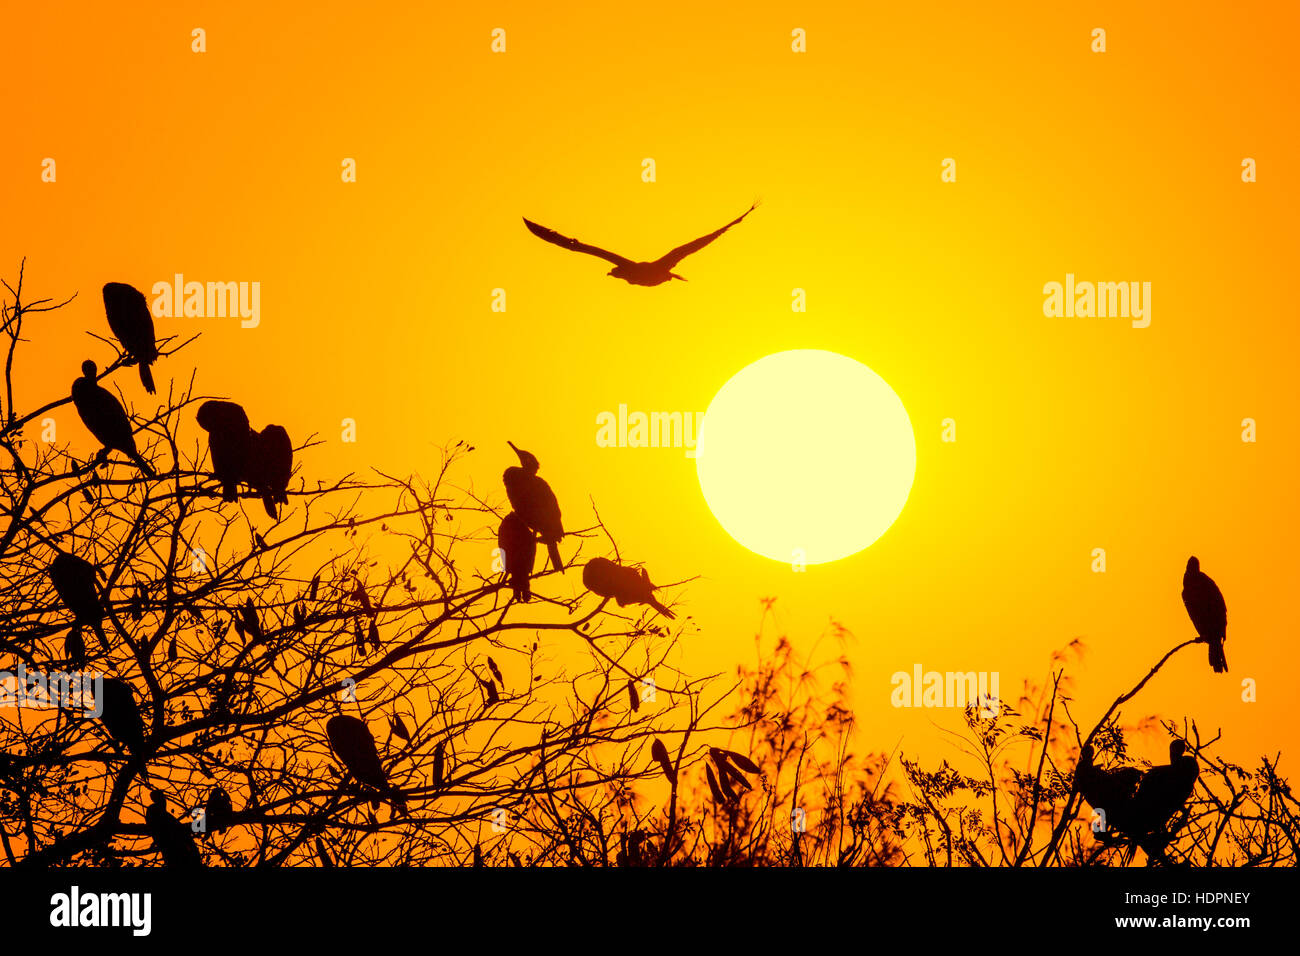 Silhouette de grand cormoran avec soleil levant Banque D'Images